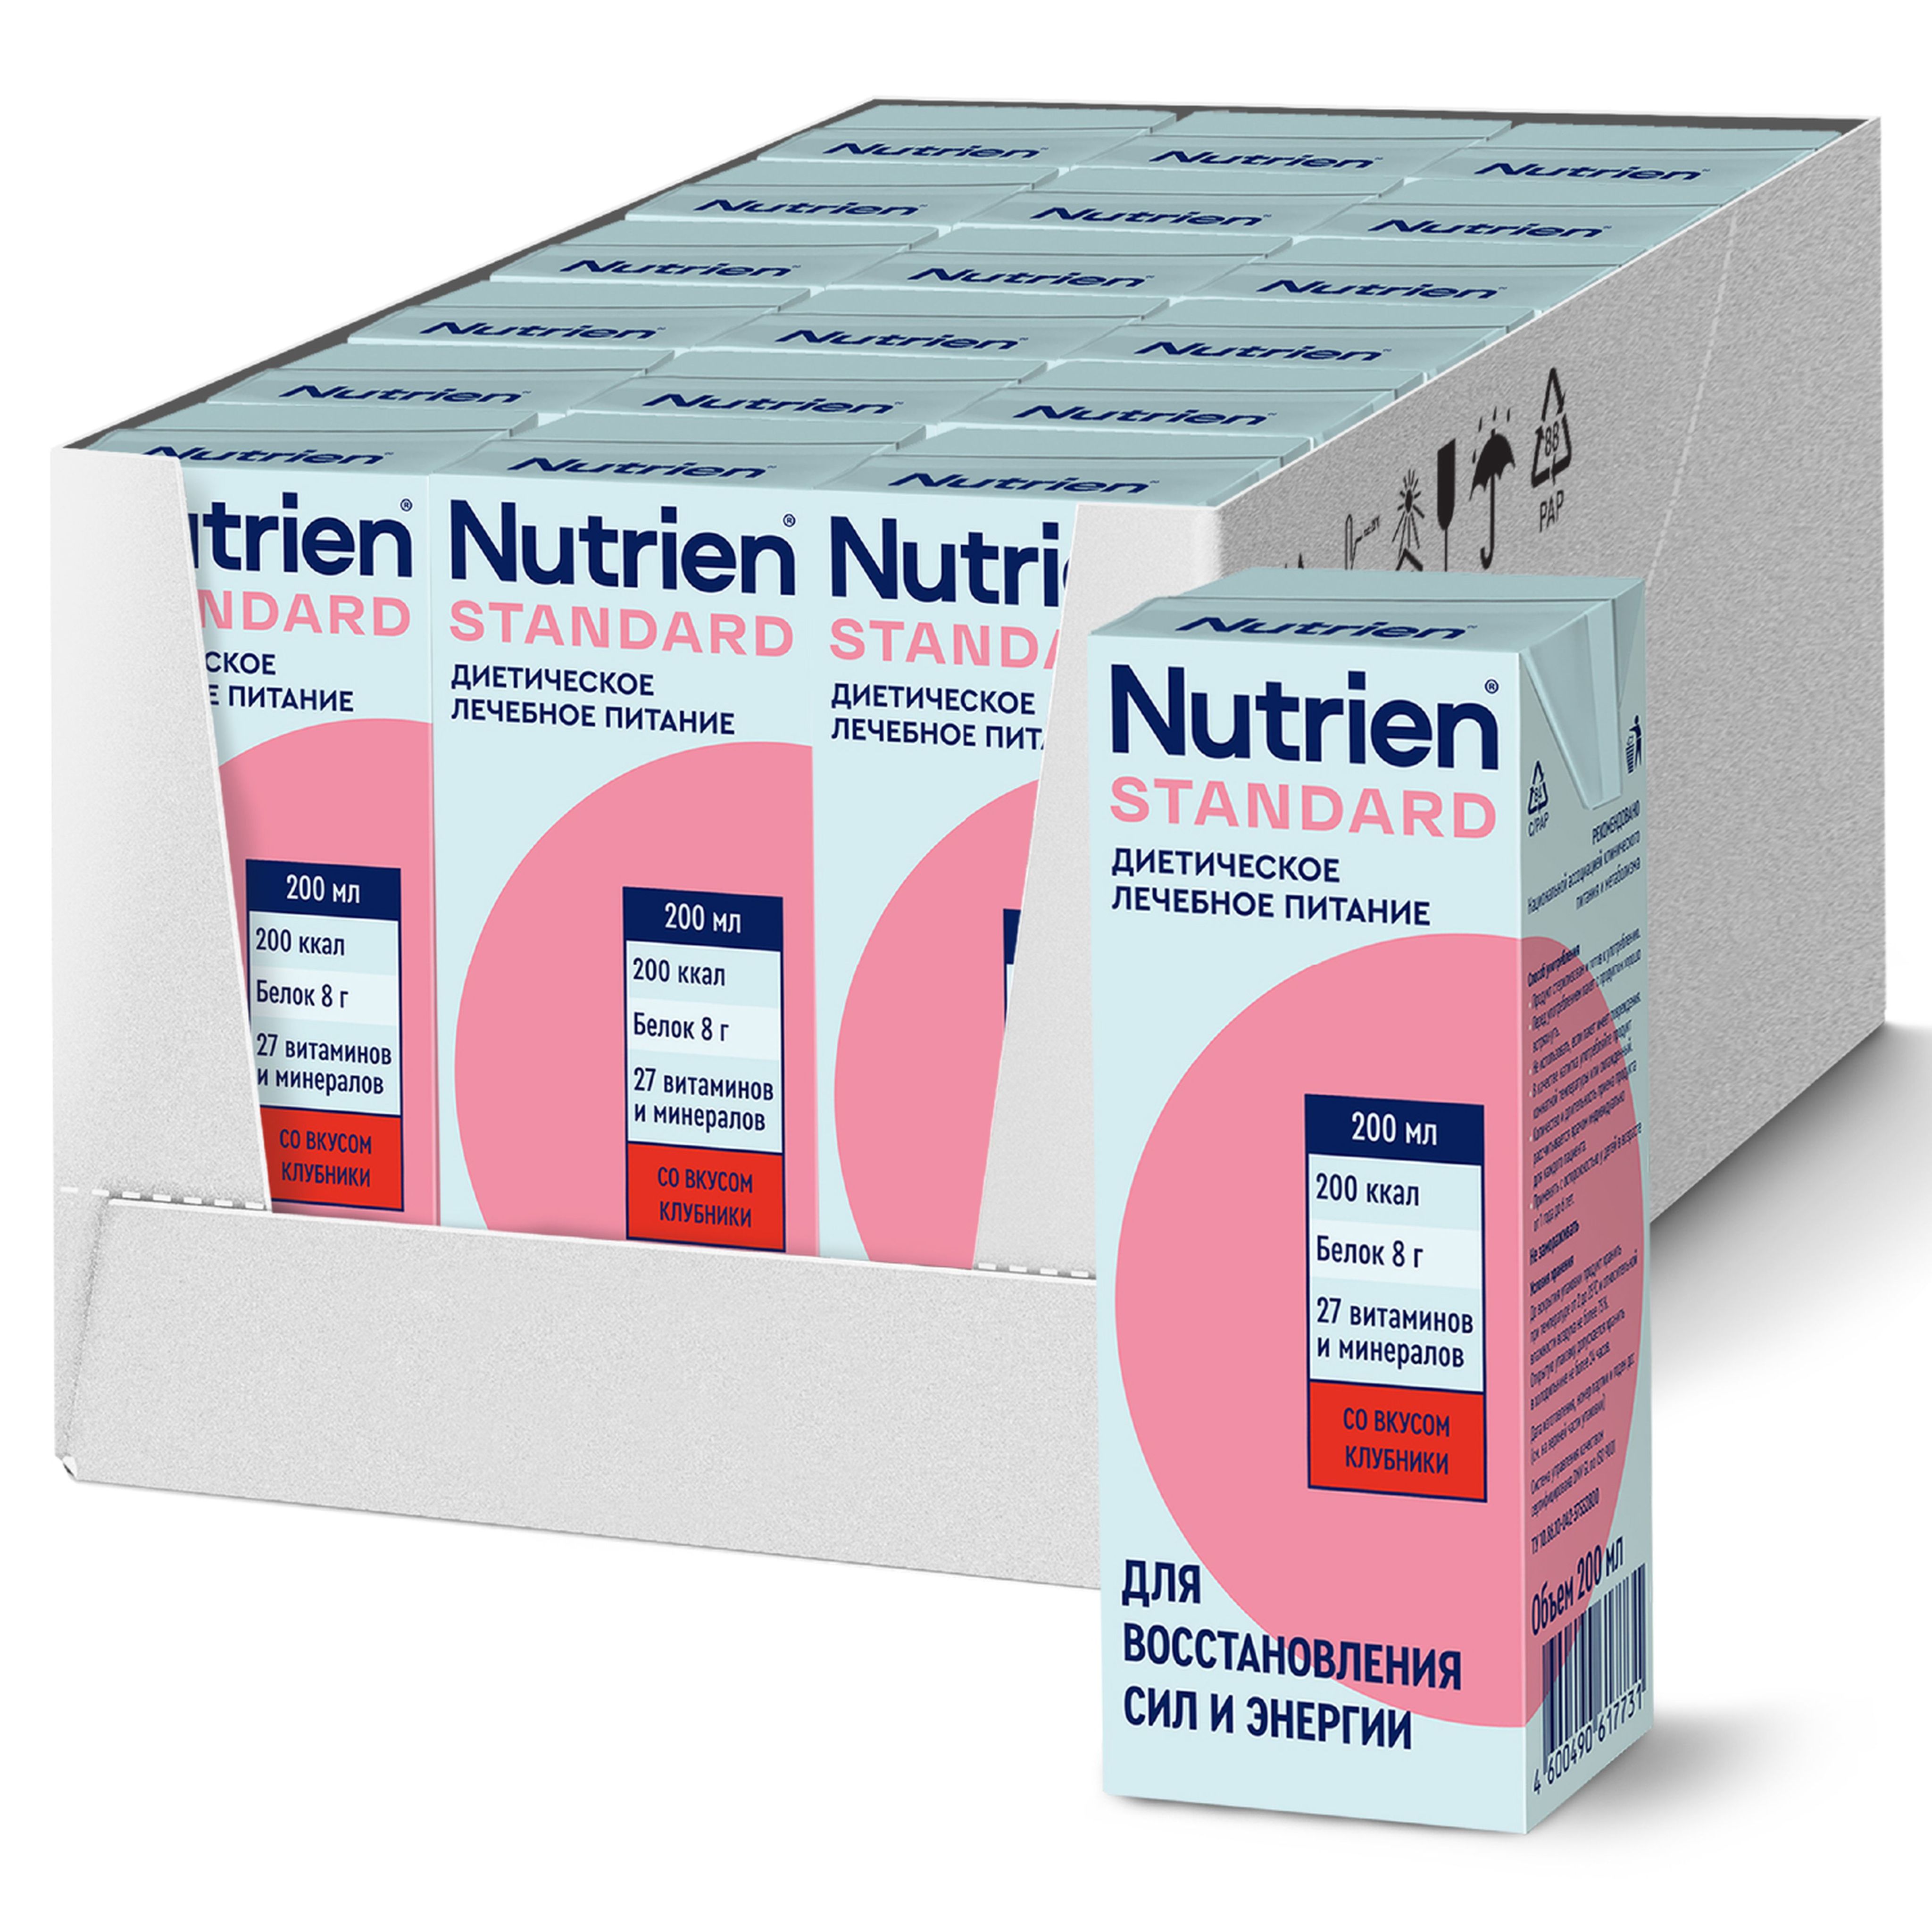 Nutrien стандарт сухая смесь. Питание Нутриэн 200 мл. Nutrien. Нутриэн диетическое лечебное питание купить. Nutrien Standart купить.